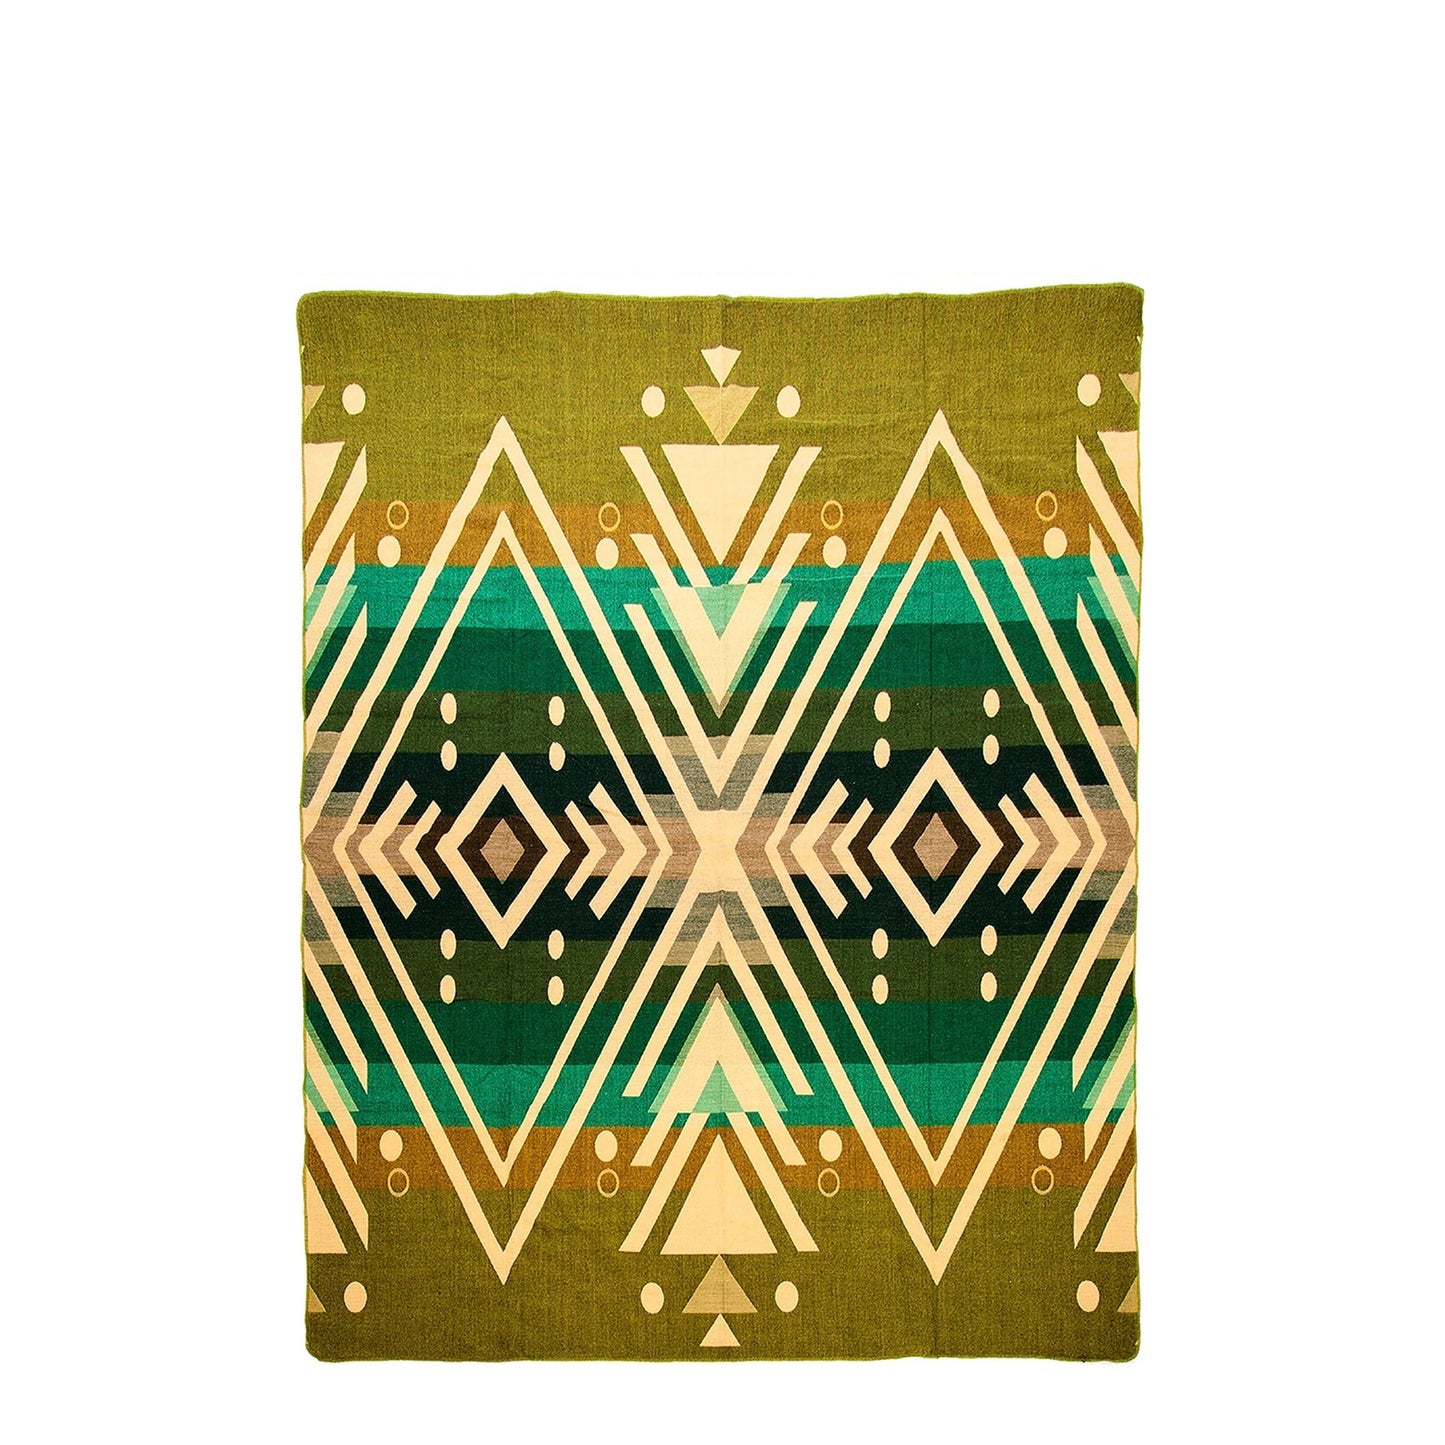 Authentische Imbabura Decke aus grüner Alpaka Wolle - 110 x 205 cm - Vandeley